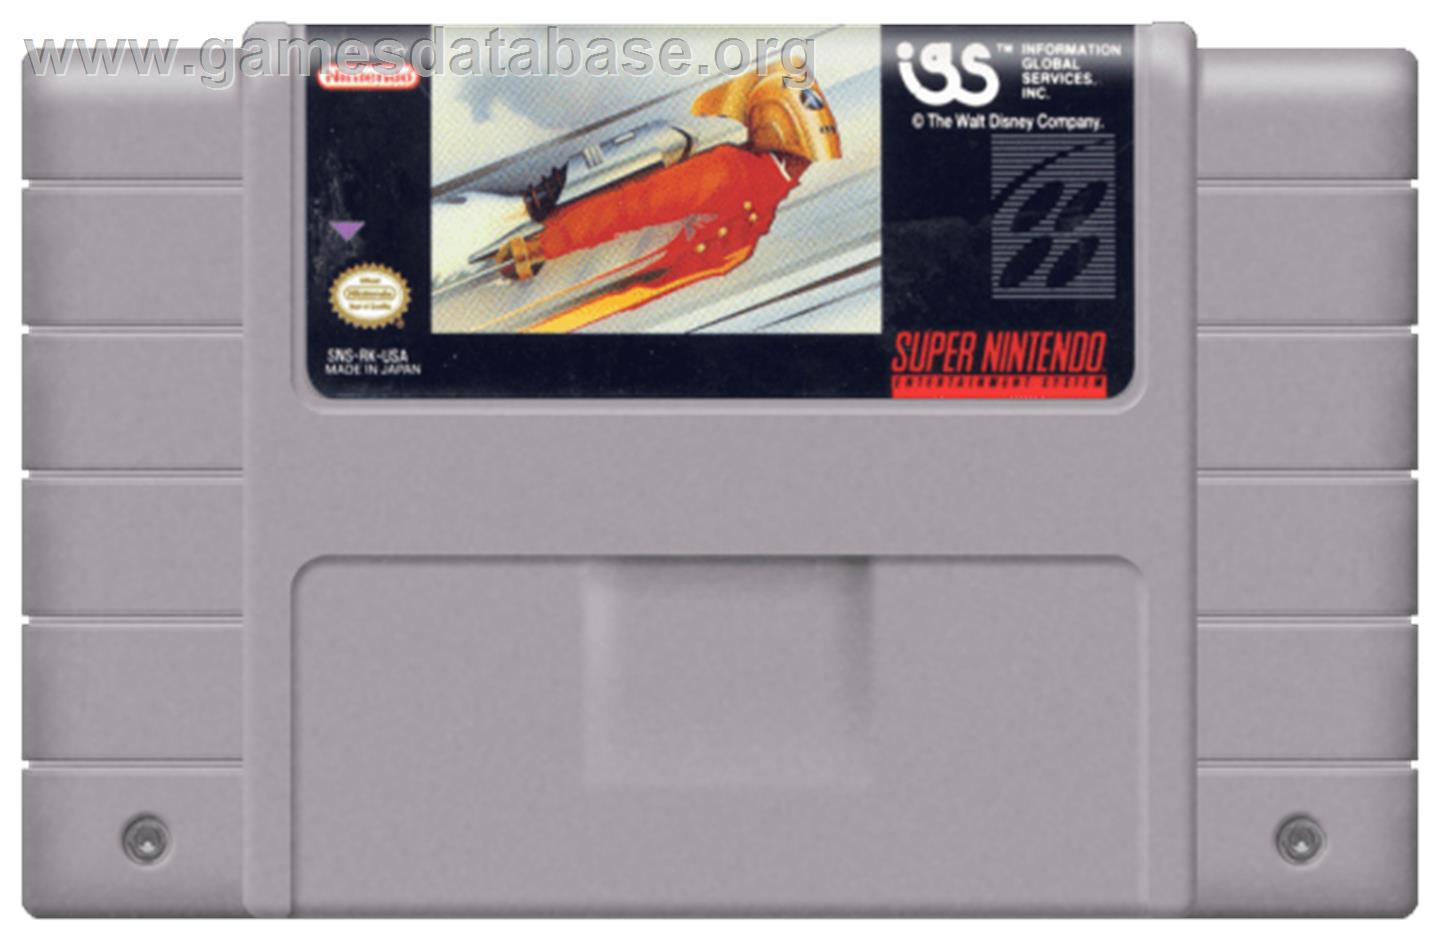 The Rocketeer - Nintendo SNES - Artwork - Cartridge